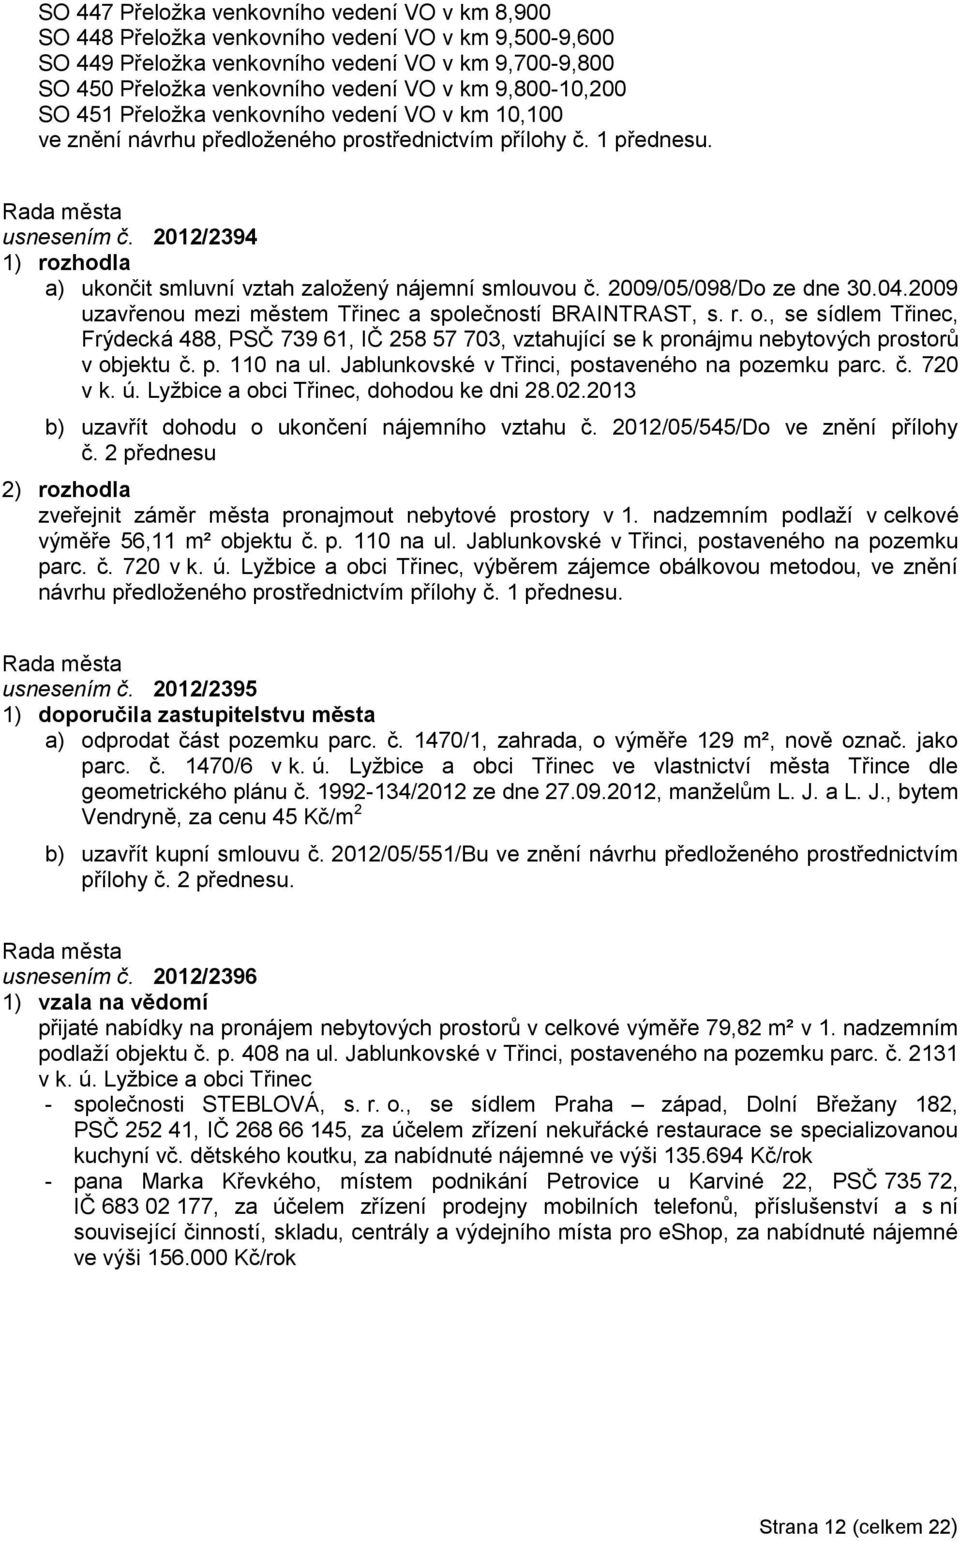 2012/2394 a) ukončit smluvní vztah zaloţený nájemní smlouvou č. 2009/05/098/Do ze dne 30.04.2009 uzavřenou mezi městem Třinec a společností BRAINTRAST, s. r. o.